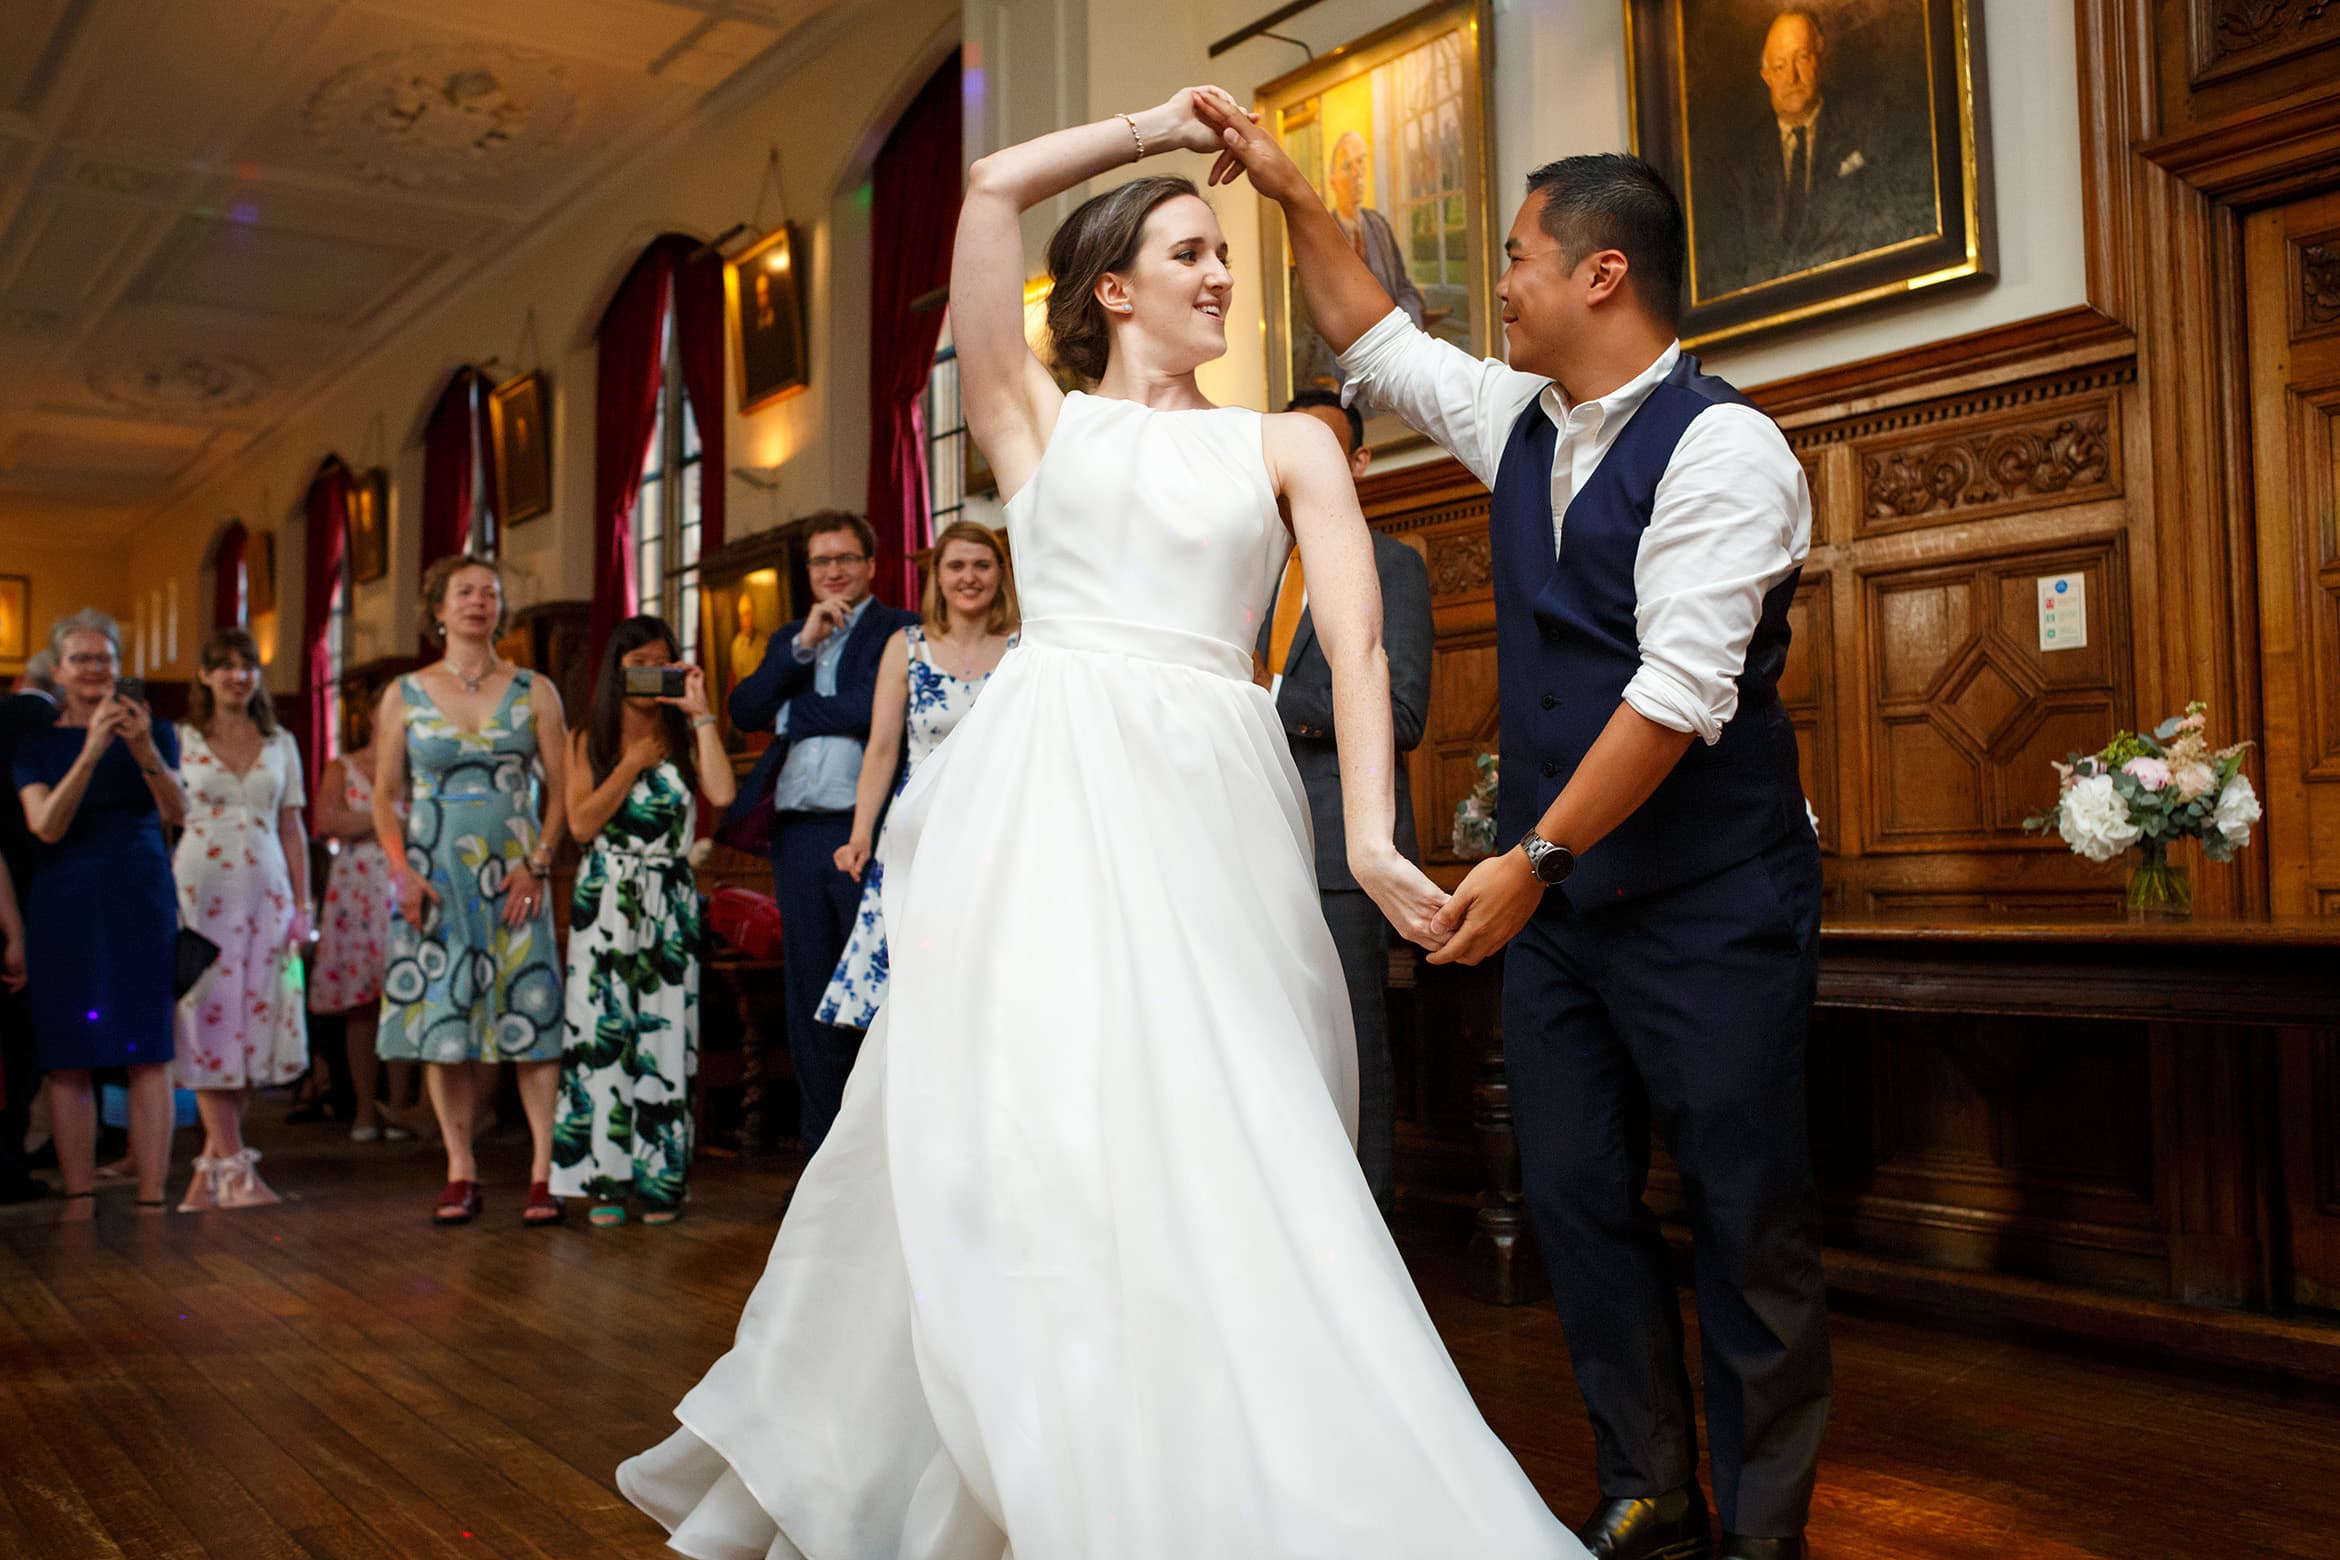 the bride dances with a guest